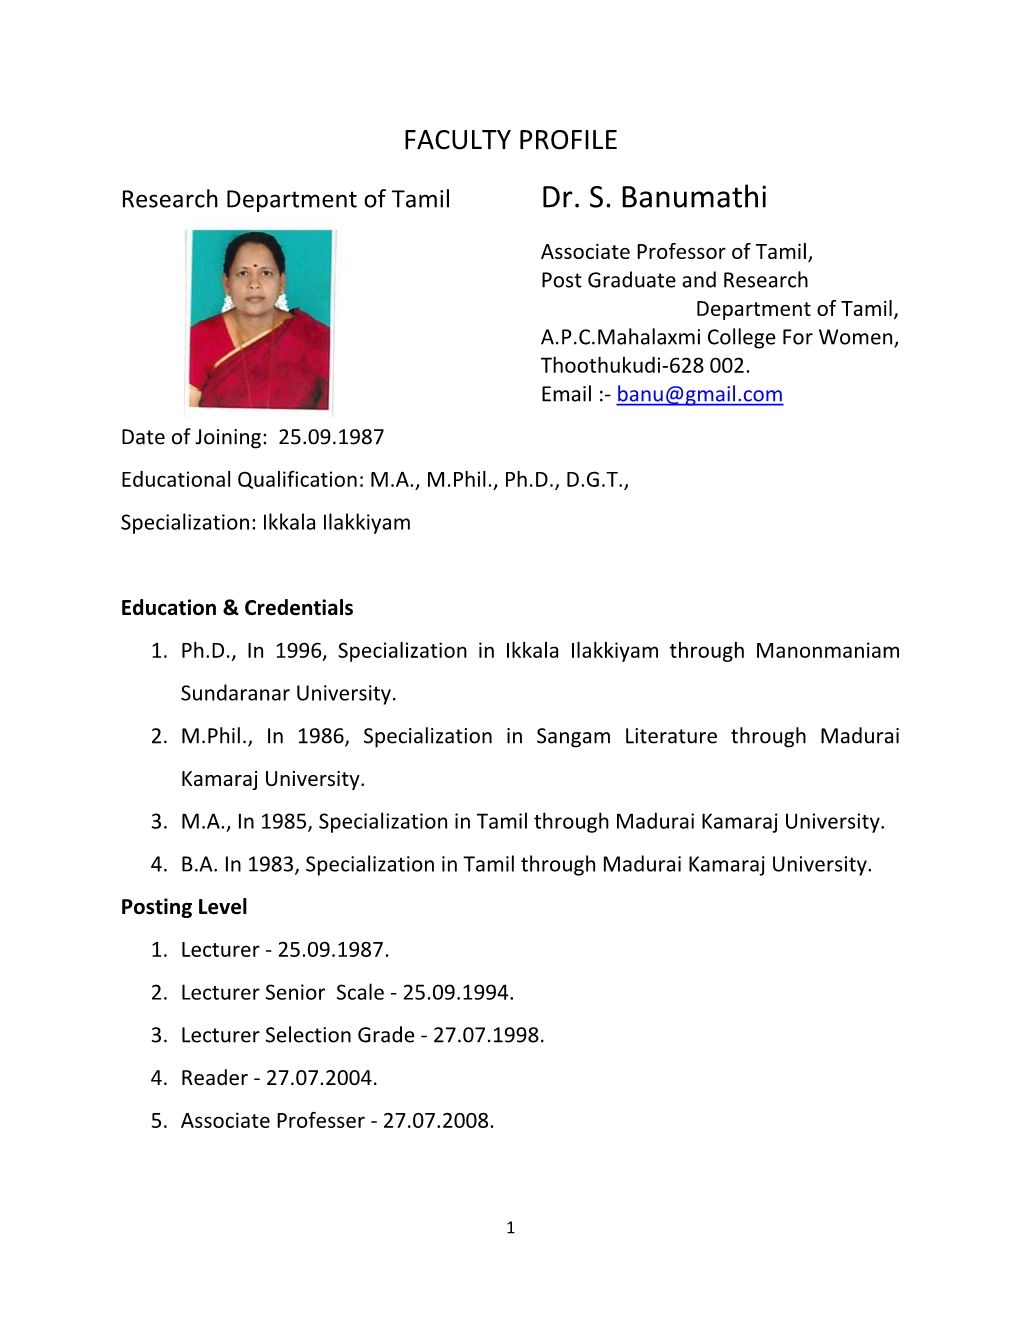 Dr. S. Banumathi